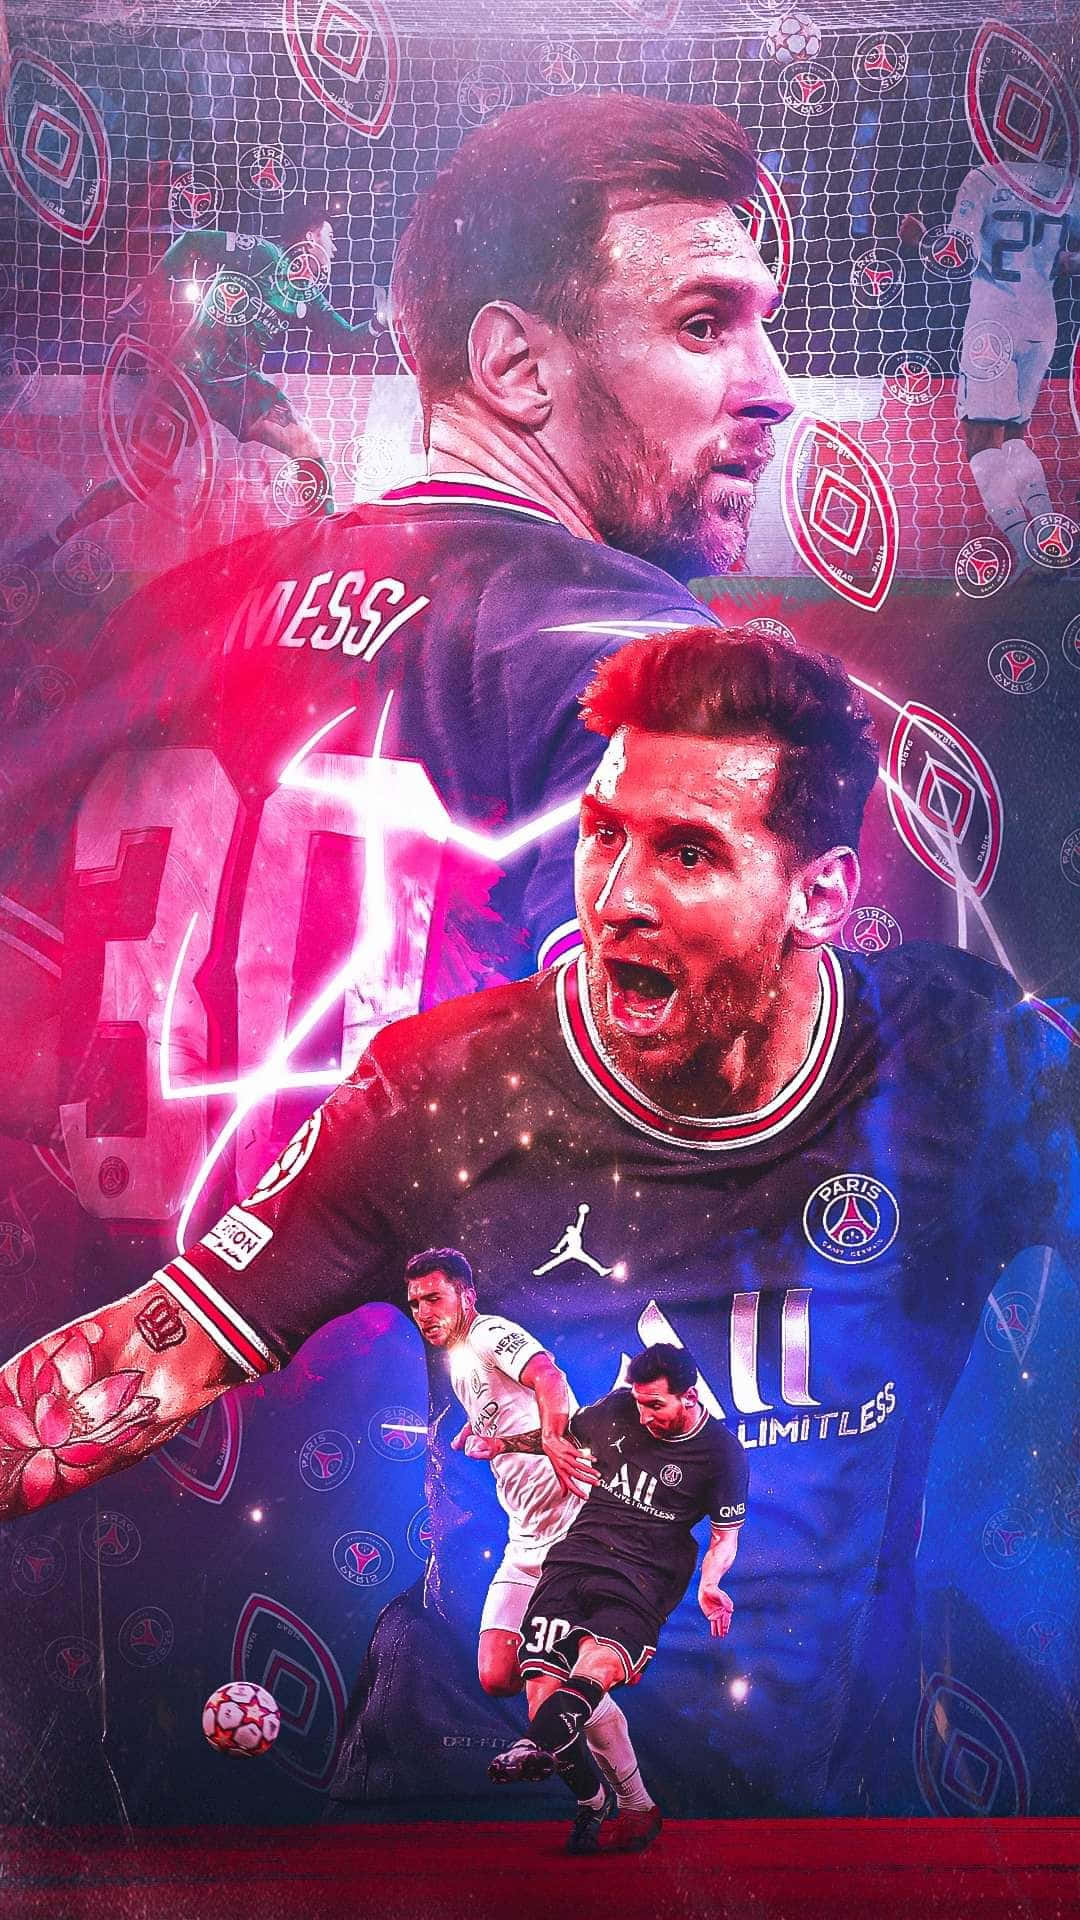 Top 25 Best Lionel Messi iPhone Wallpapers  GettyWallpapers